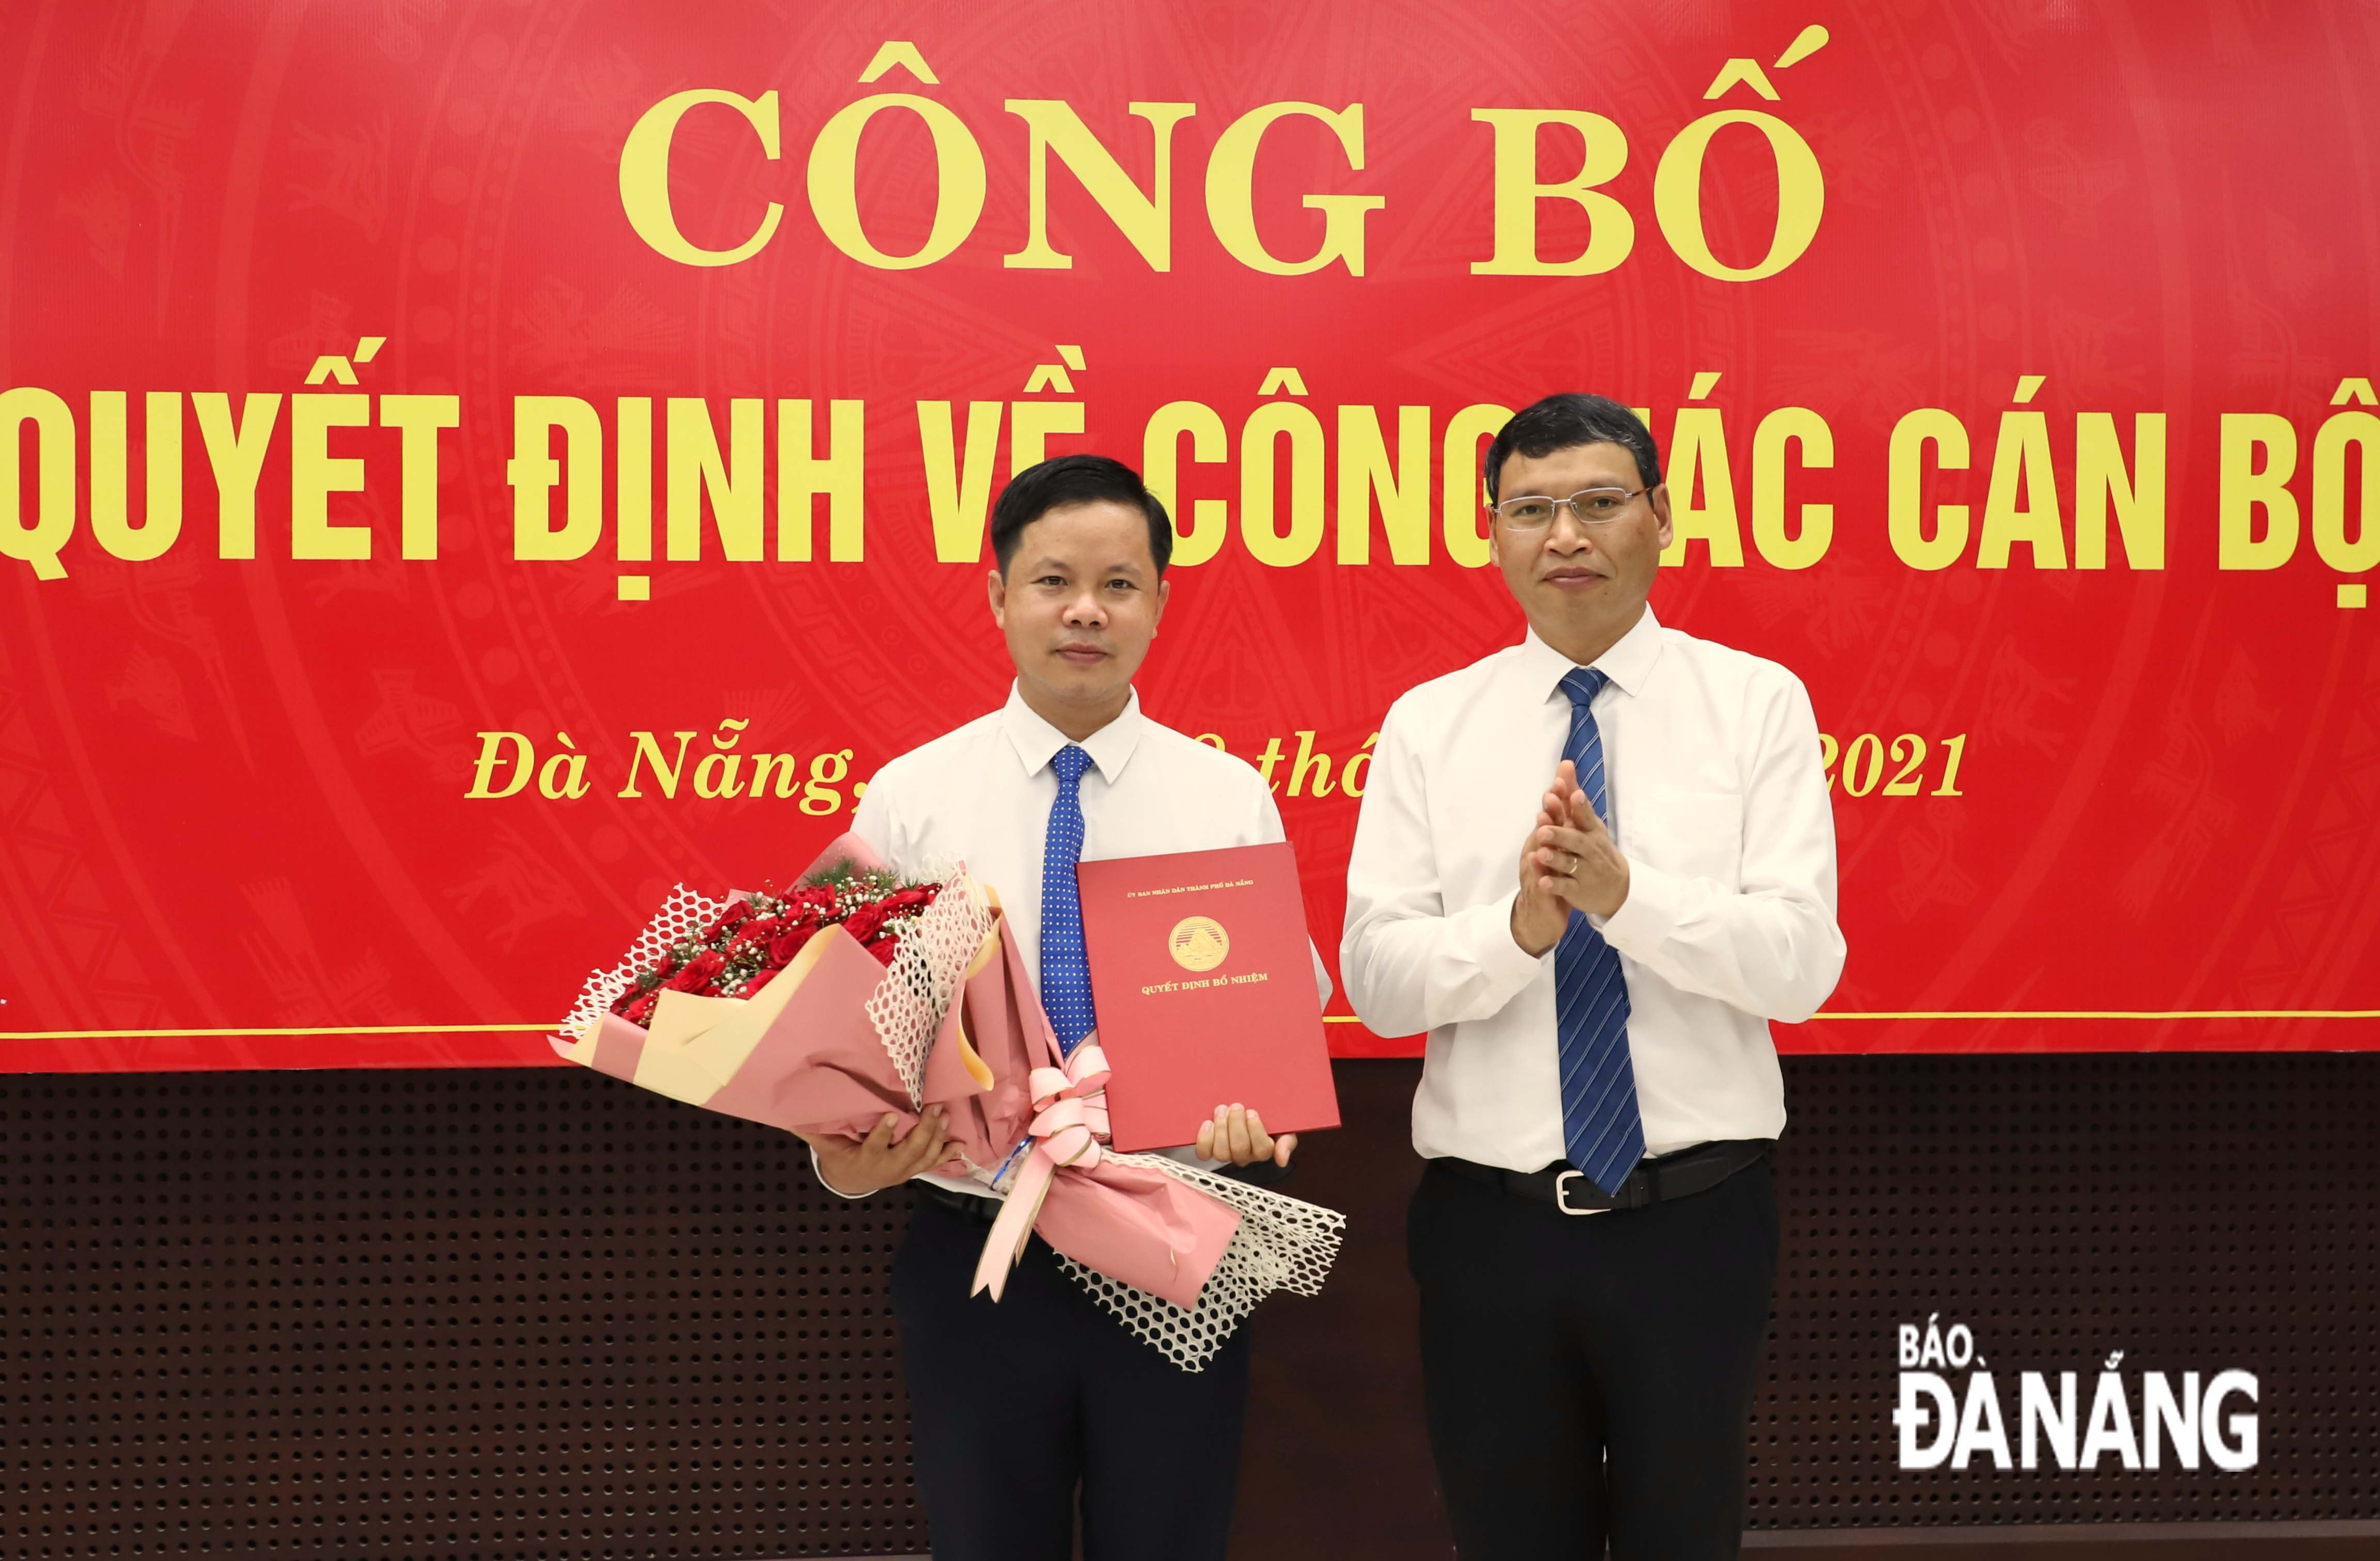 Phó Chủ tịch Thường trực UBND thành phố Hồ Kỳ Minh trao công bố quyết định của Chủ tịch UBND thành phố cho ông Lê Minh Tường. Ảnh: NGỌC PHÚ